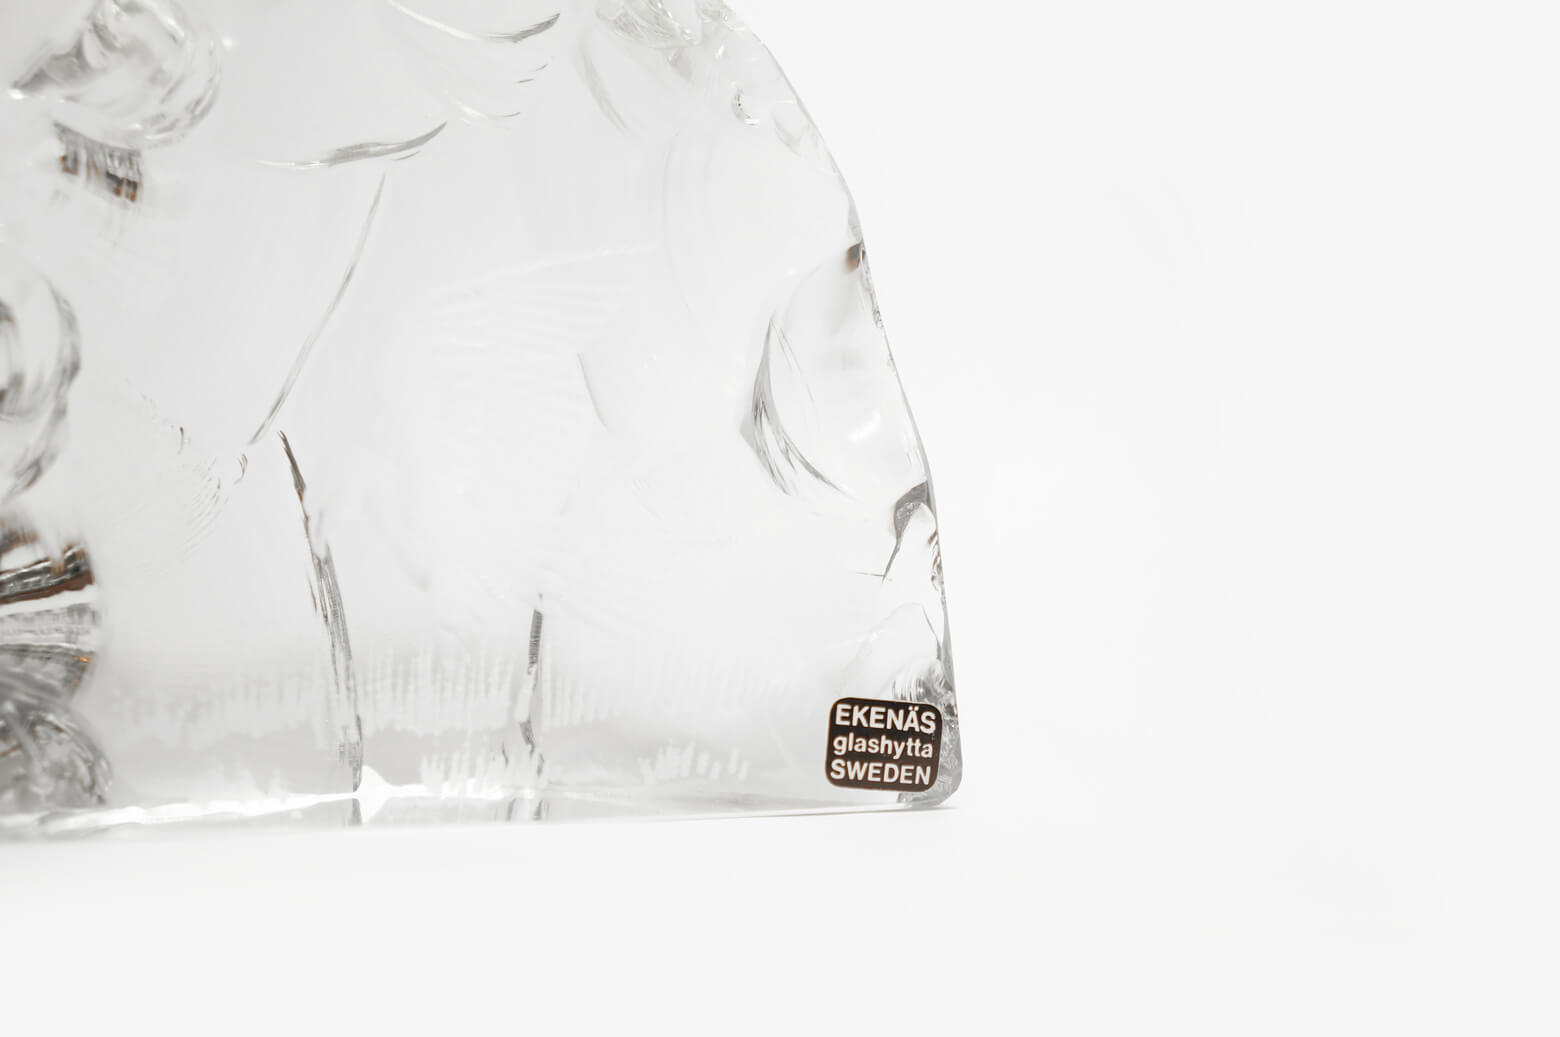 Ekenas Glashytta Glass Object Bird Tony Racov/ガラス オブジェ 鳥 スウェーデン 北欧雑貨 ヴィンテージ